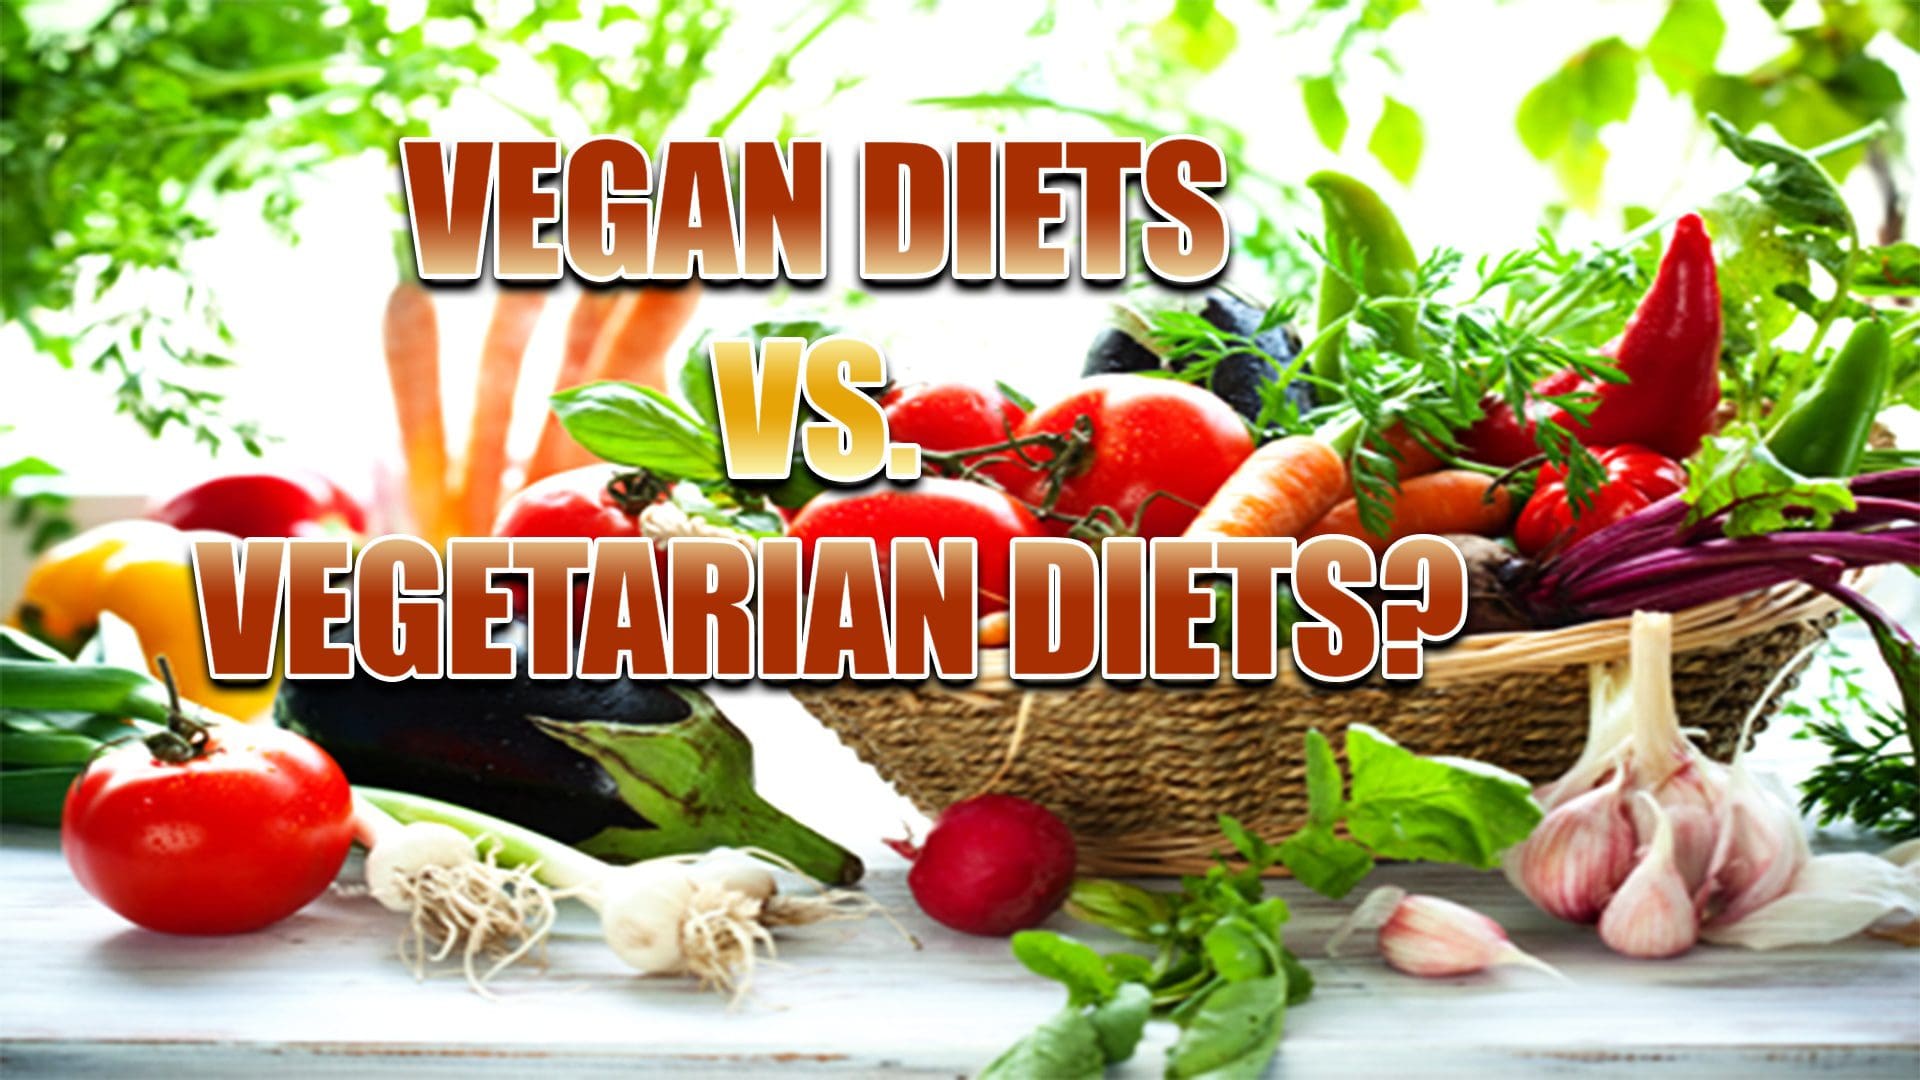 Vegan Diets Vs Vegetarian Diets Chiropractic Scientists 915 850 0900 0612